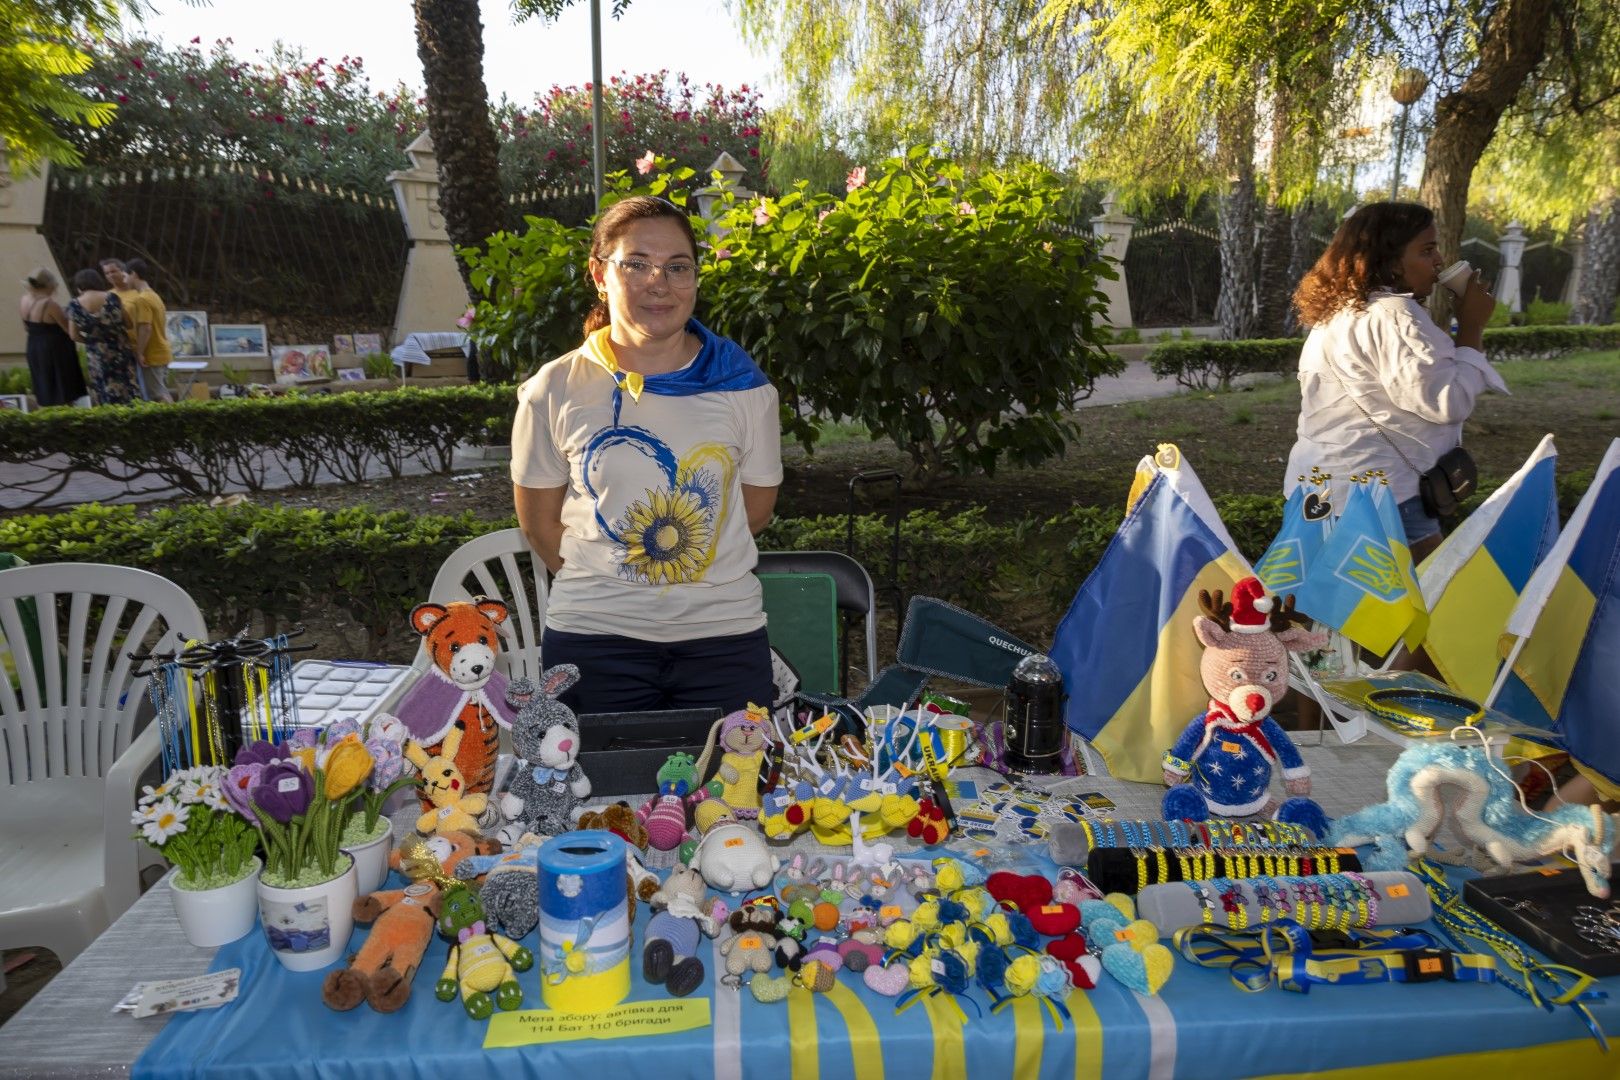 Celebración del aniversario de la independencia de Ucrania en las calles de Torrevieja y el Parque de las Naciones